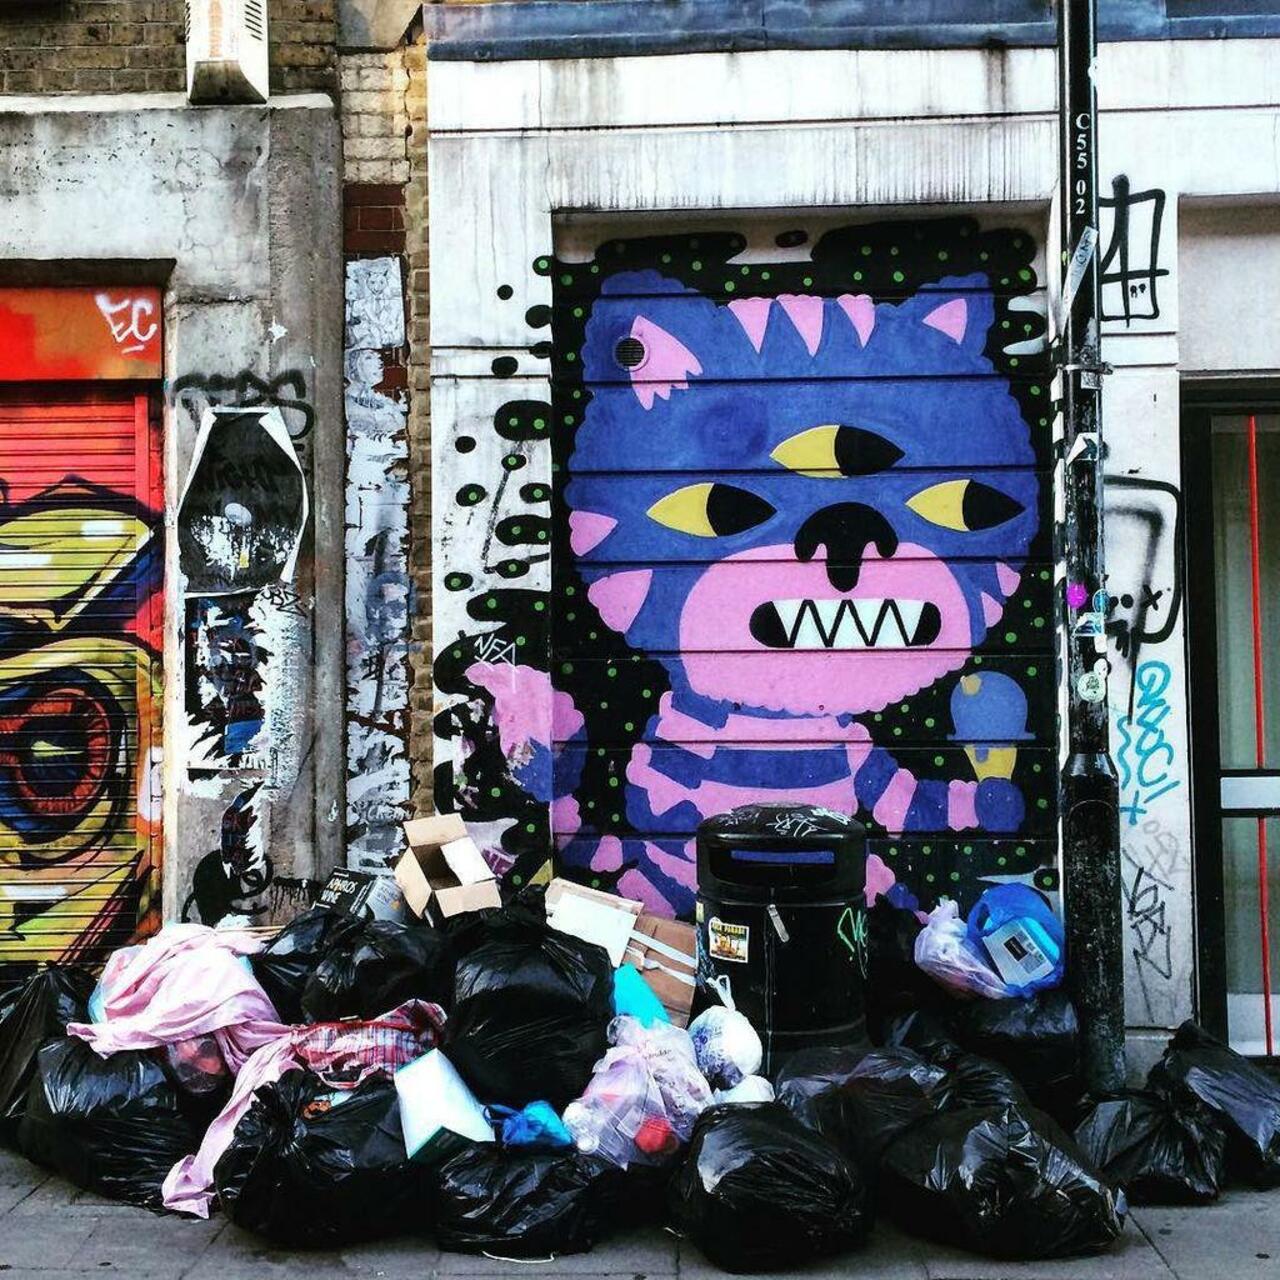 #graffitiporn  #wallporn #mural  #murales  #graffitiporn #lovestreetart #streetart #graffiti #london #loveshoreditc… http://t.co/REV2ONSLgD